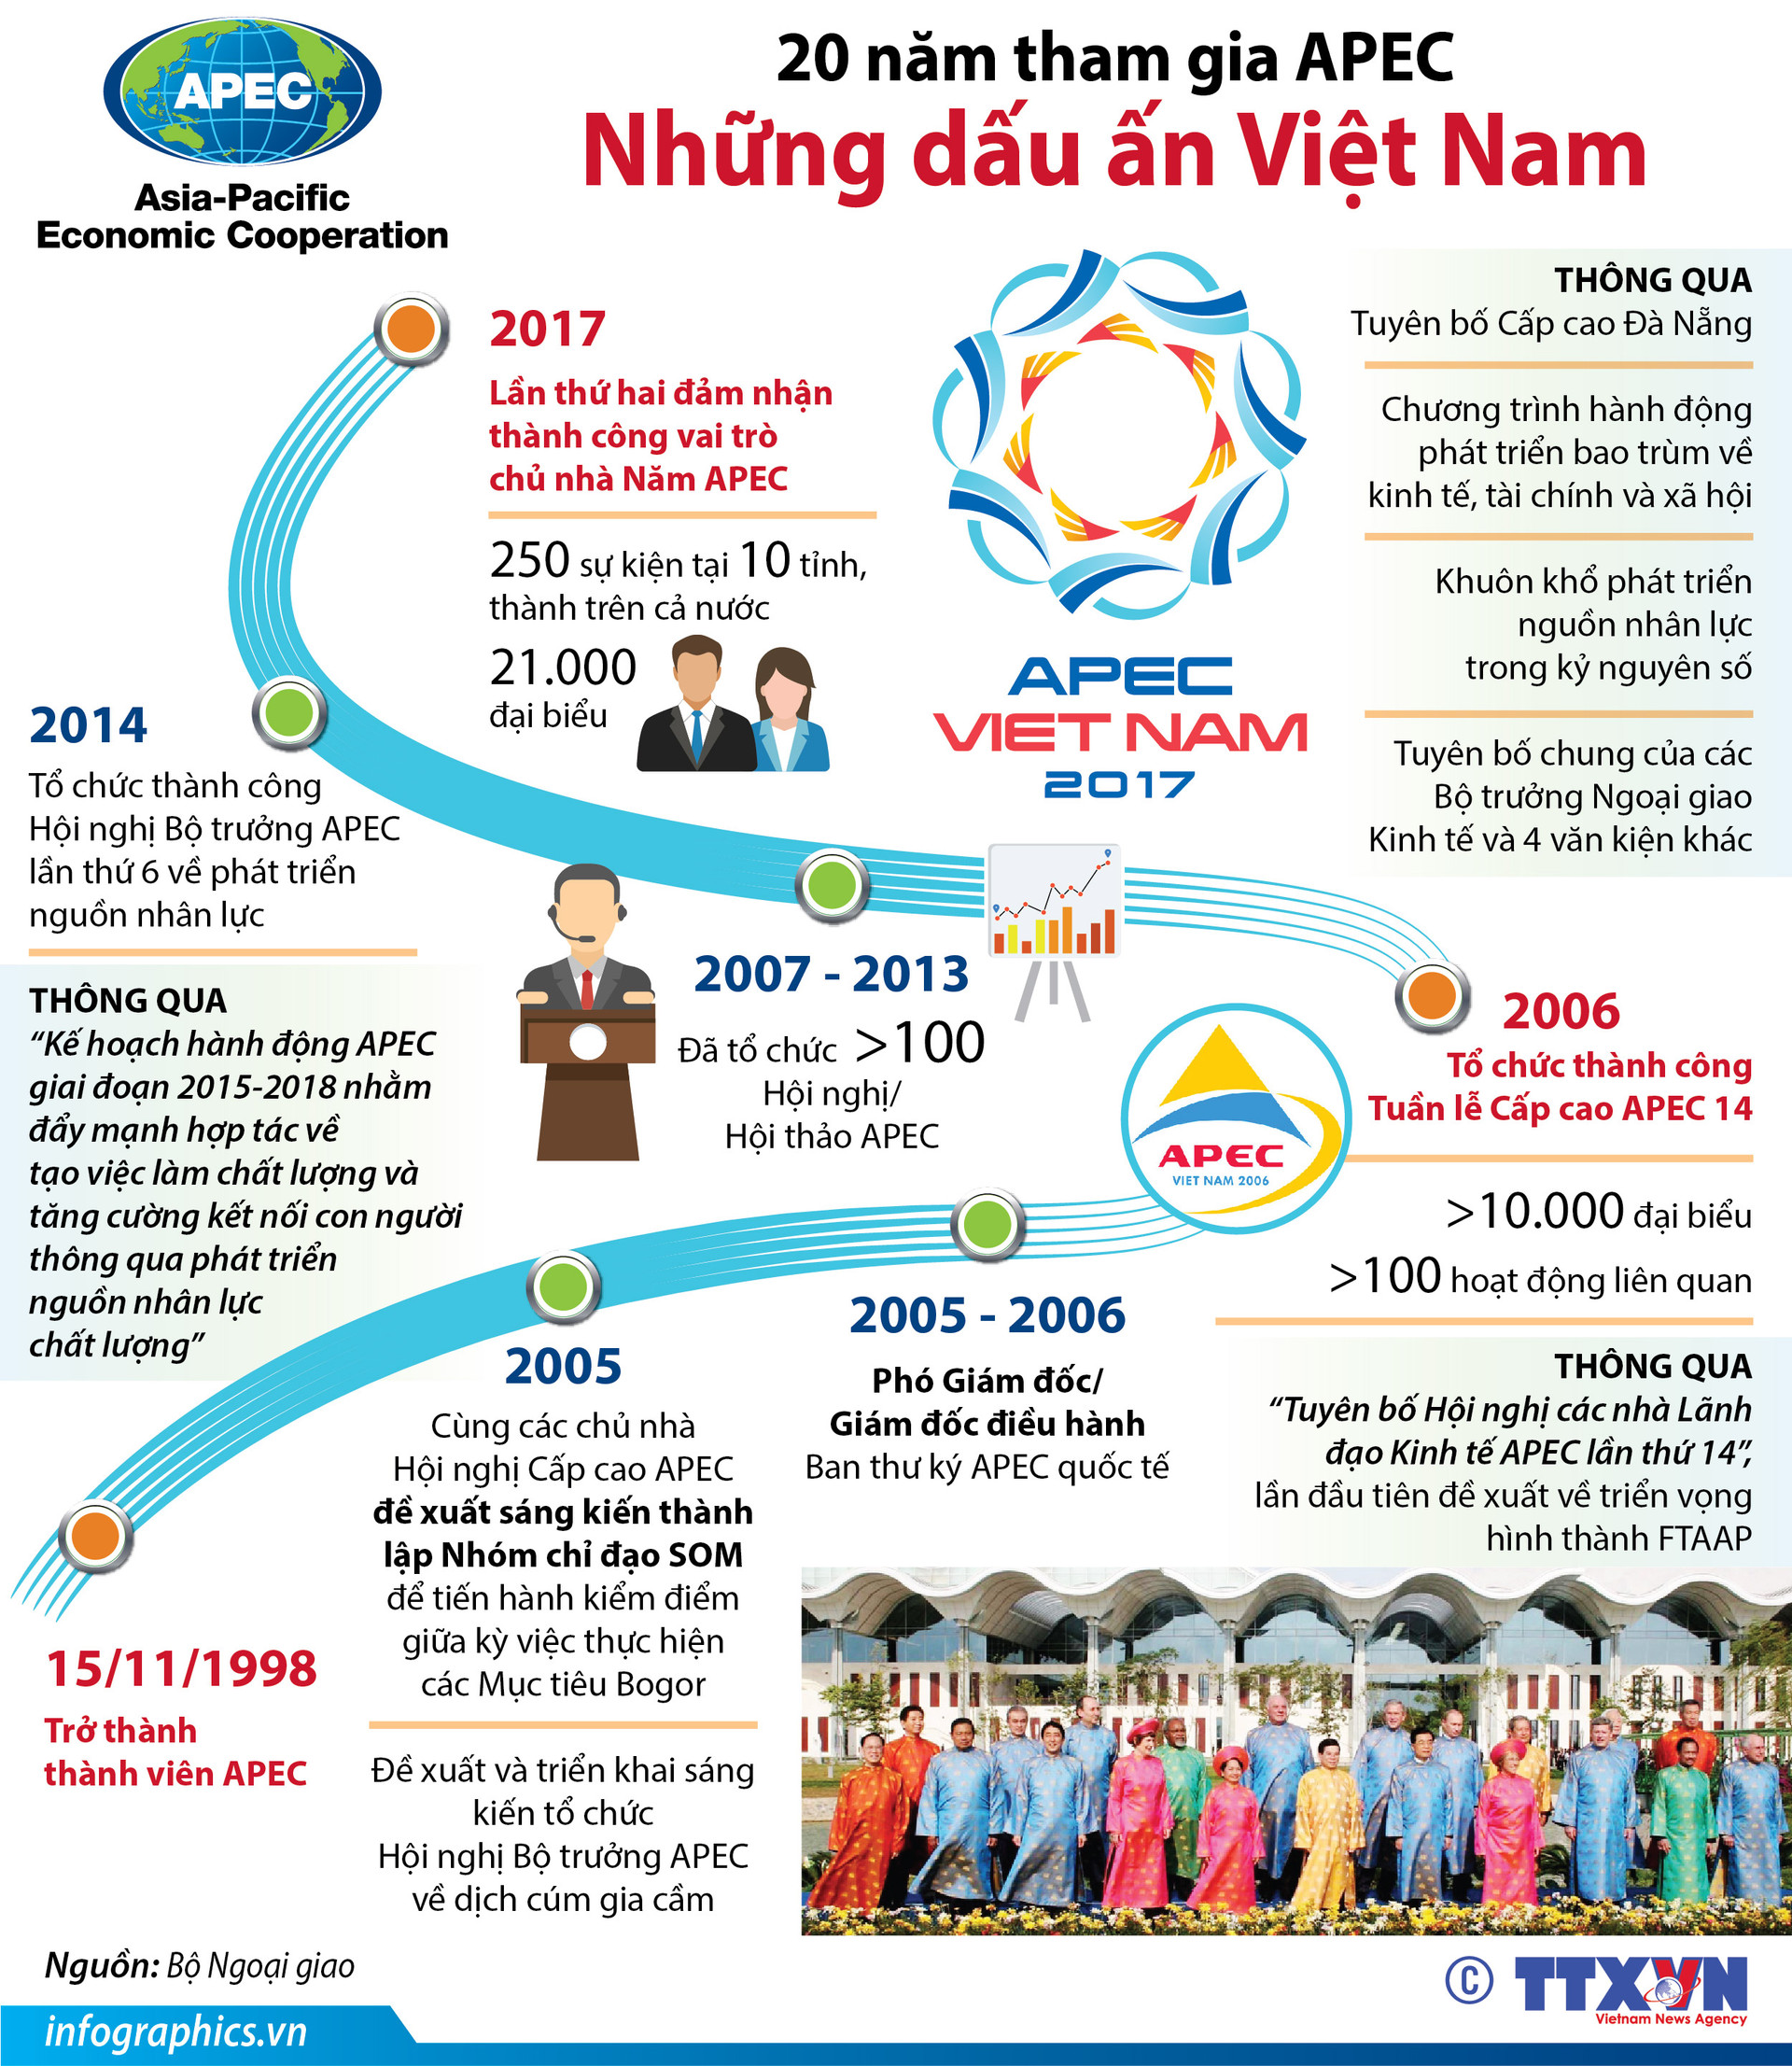 20 năm tham gia APEC: Những dấu ấn Việt Nam